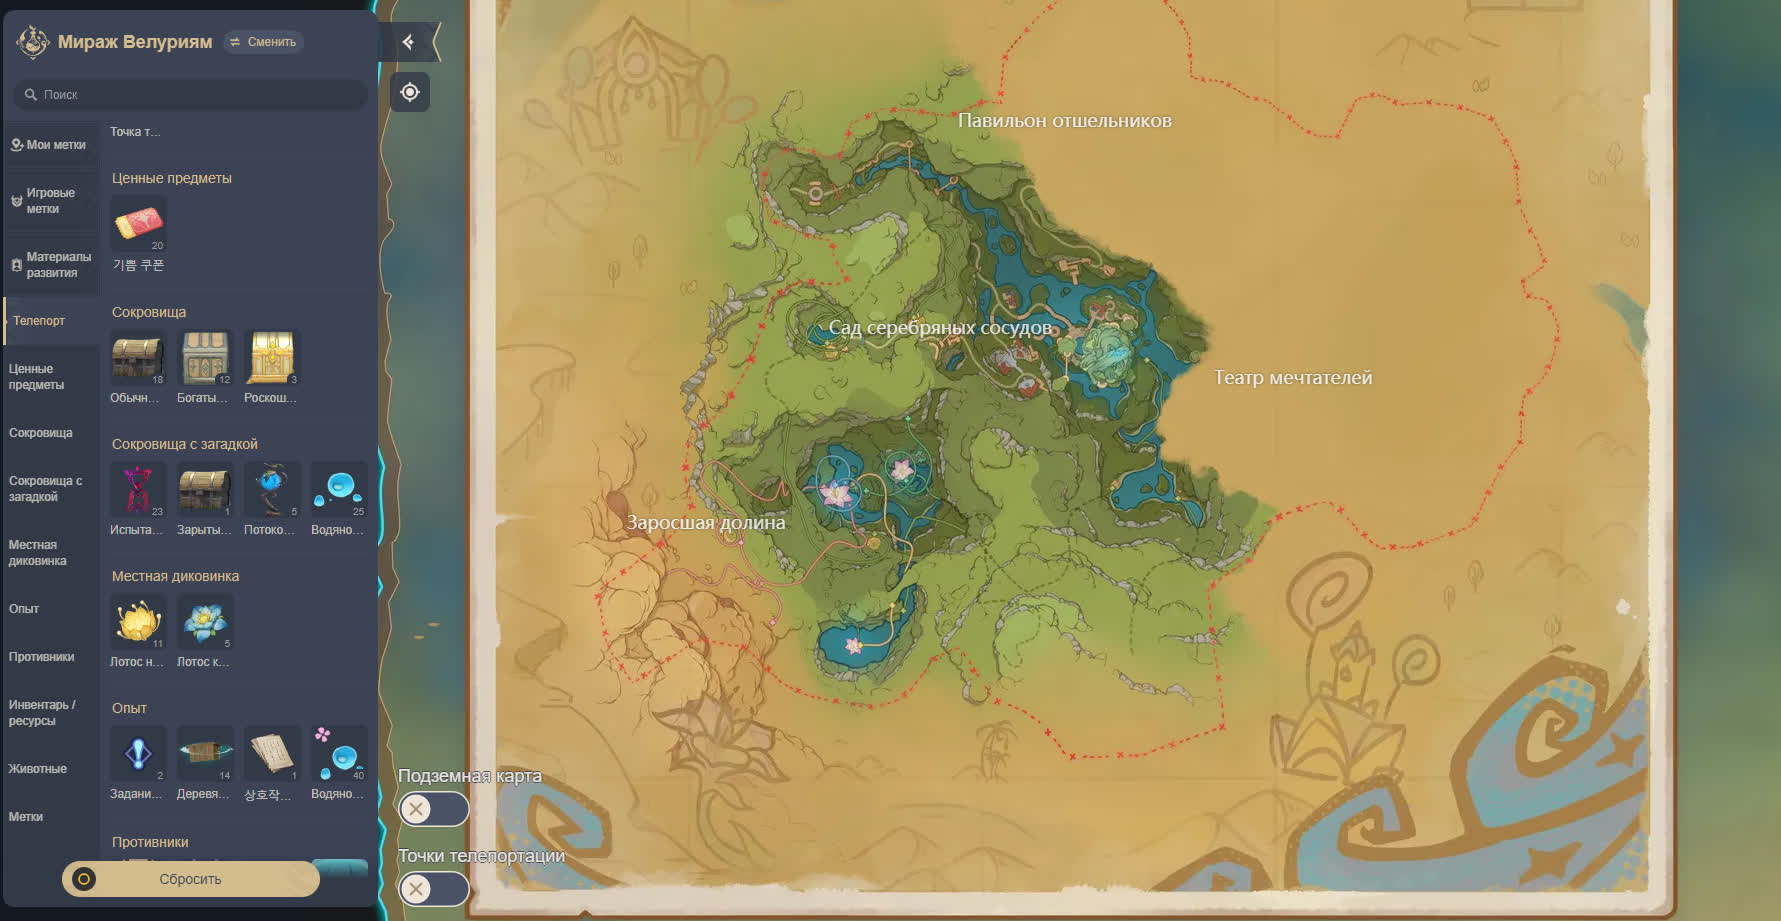 Interaktive Karte von Mirage Veluriyam in Genshin Impact 3.8